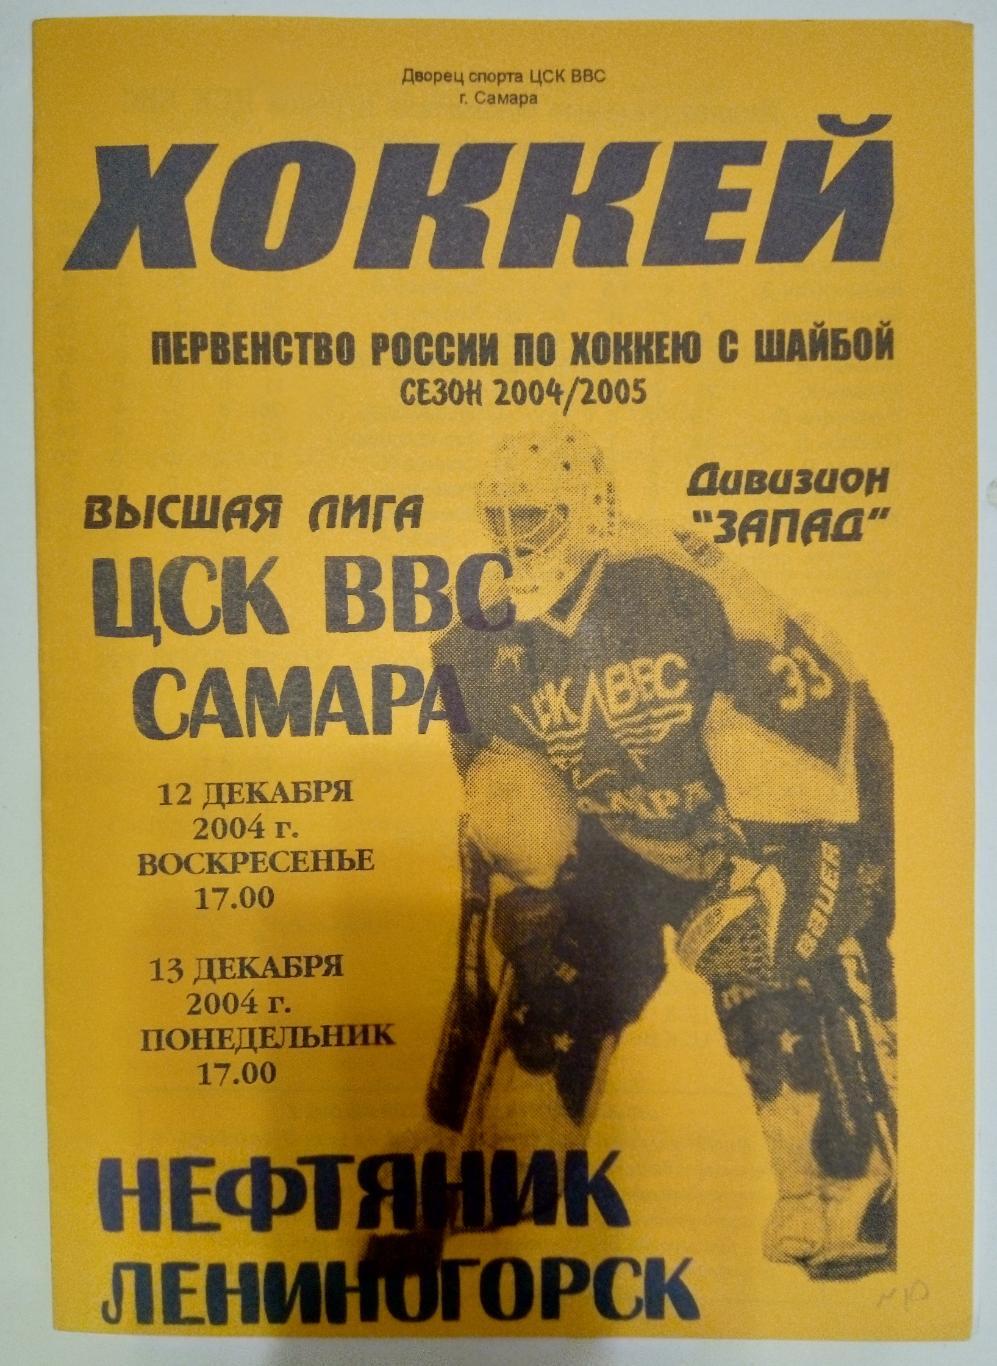 хоккей: ЦСК ВВС Самара - Нефтяник Лениногорск - 2004/2005